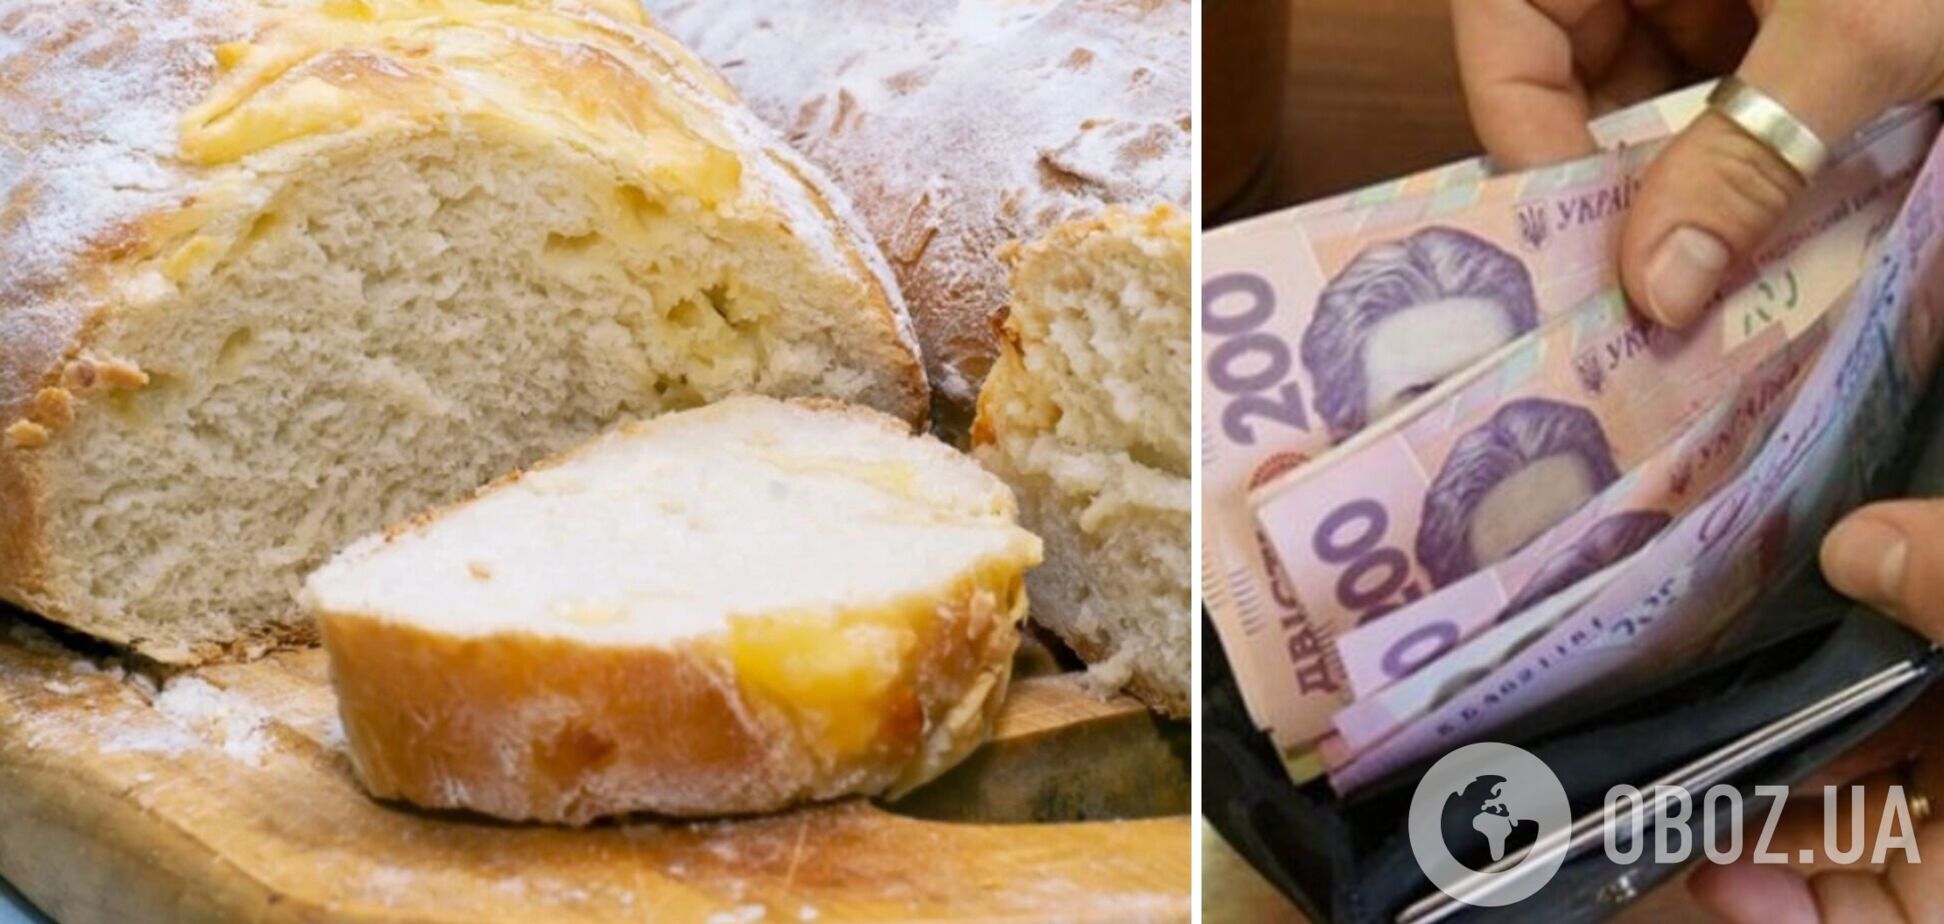 Цена на хлеб в Украине пробила психологическую отметку